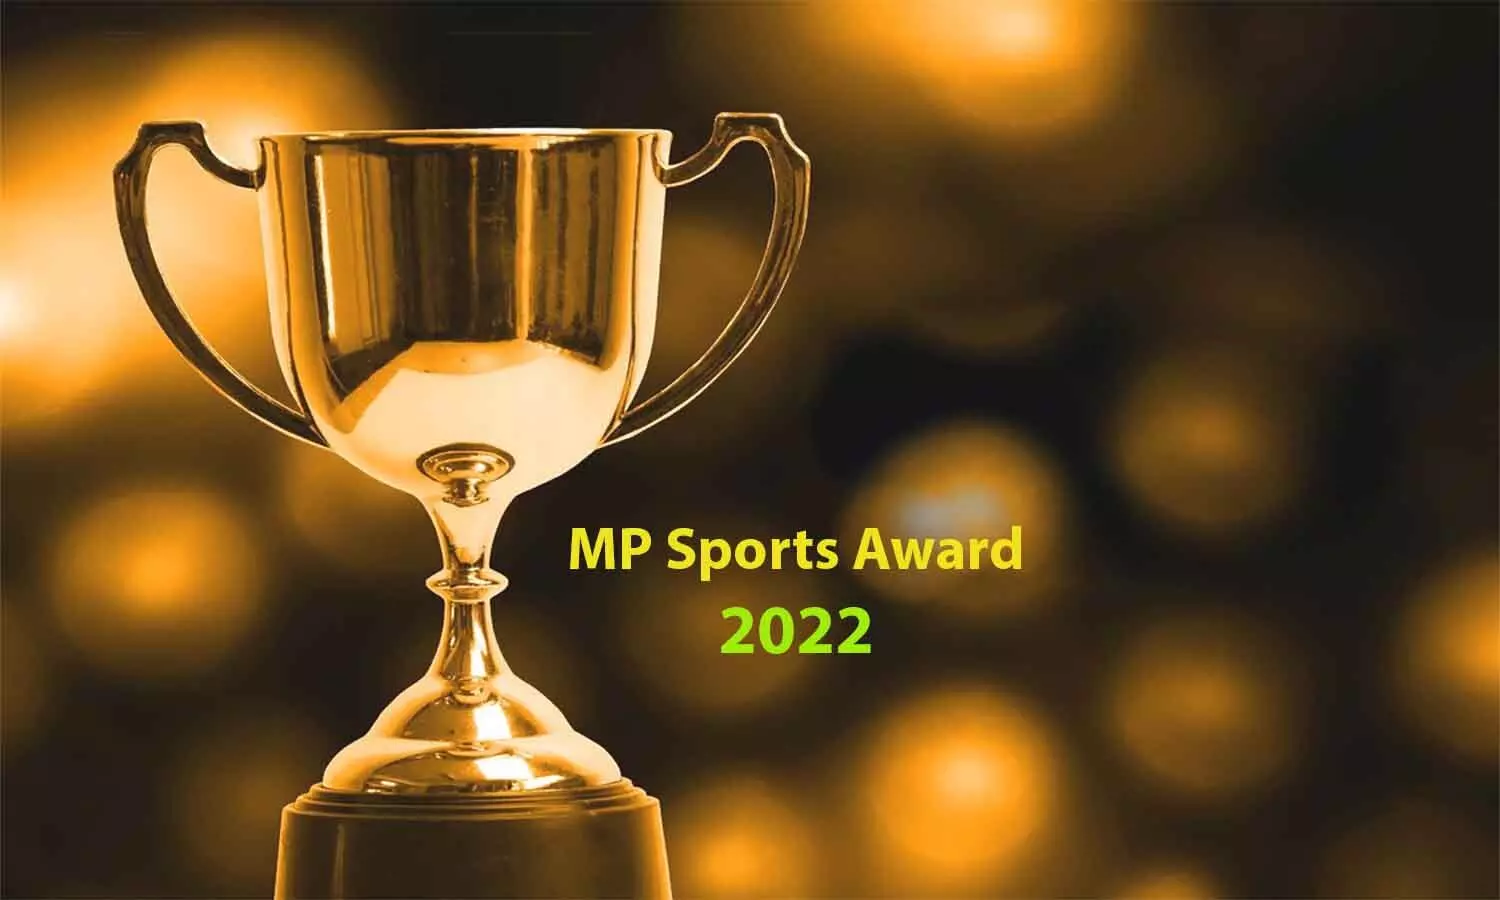 MP Sport Awards: राज्य स्तरीय खेल पुरस्कारों की हुई घोषणा, 11 खिलाड़ी एकलव्य व 10 विक्रम पुरस्कार से होंगे सम्मानित